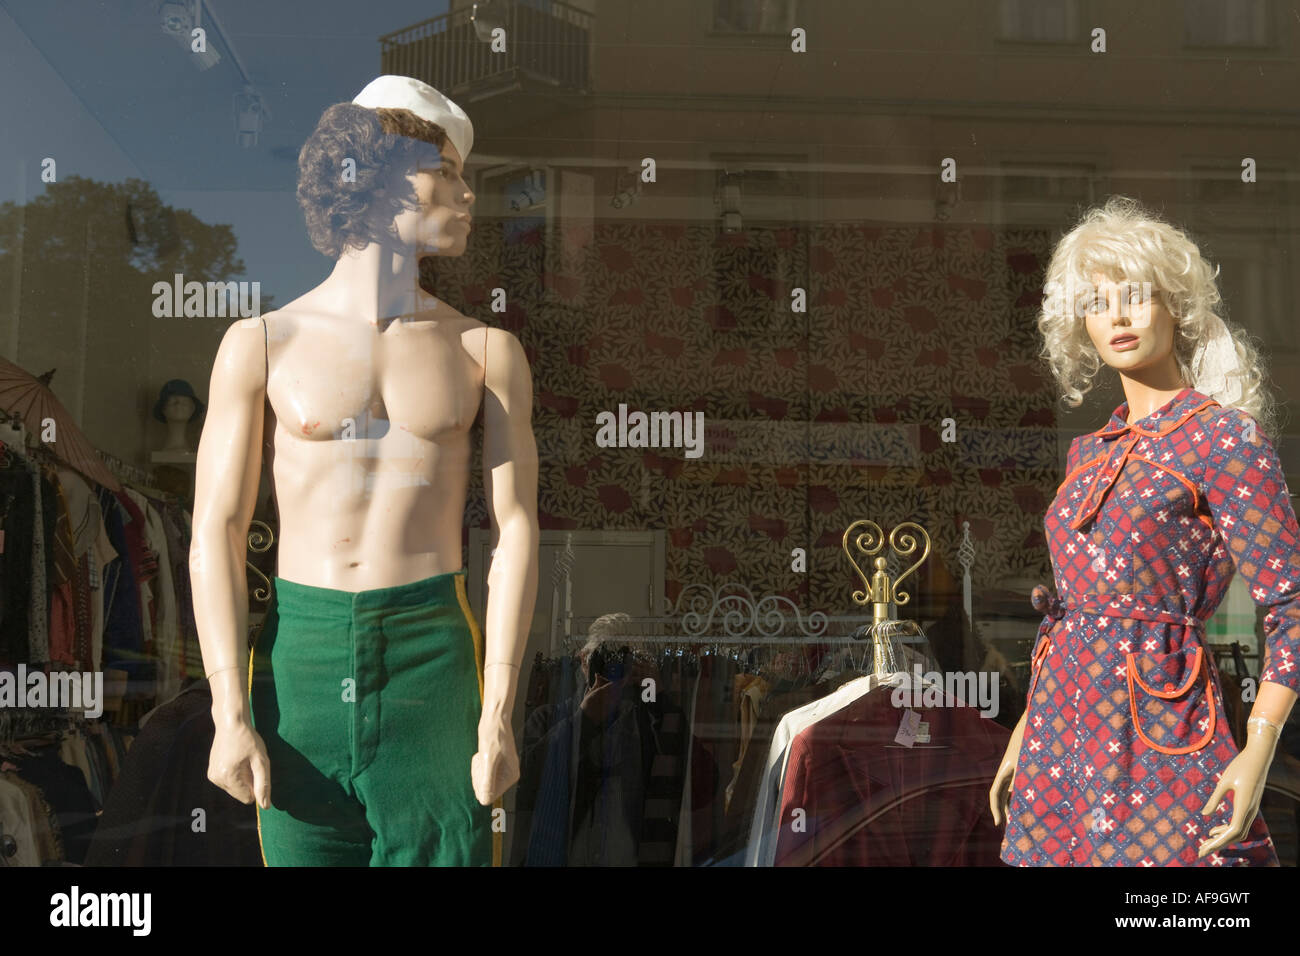 Fenster in gebrauchte Kleidung in Stockholm Schweden No Release Stockfoto